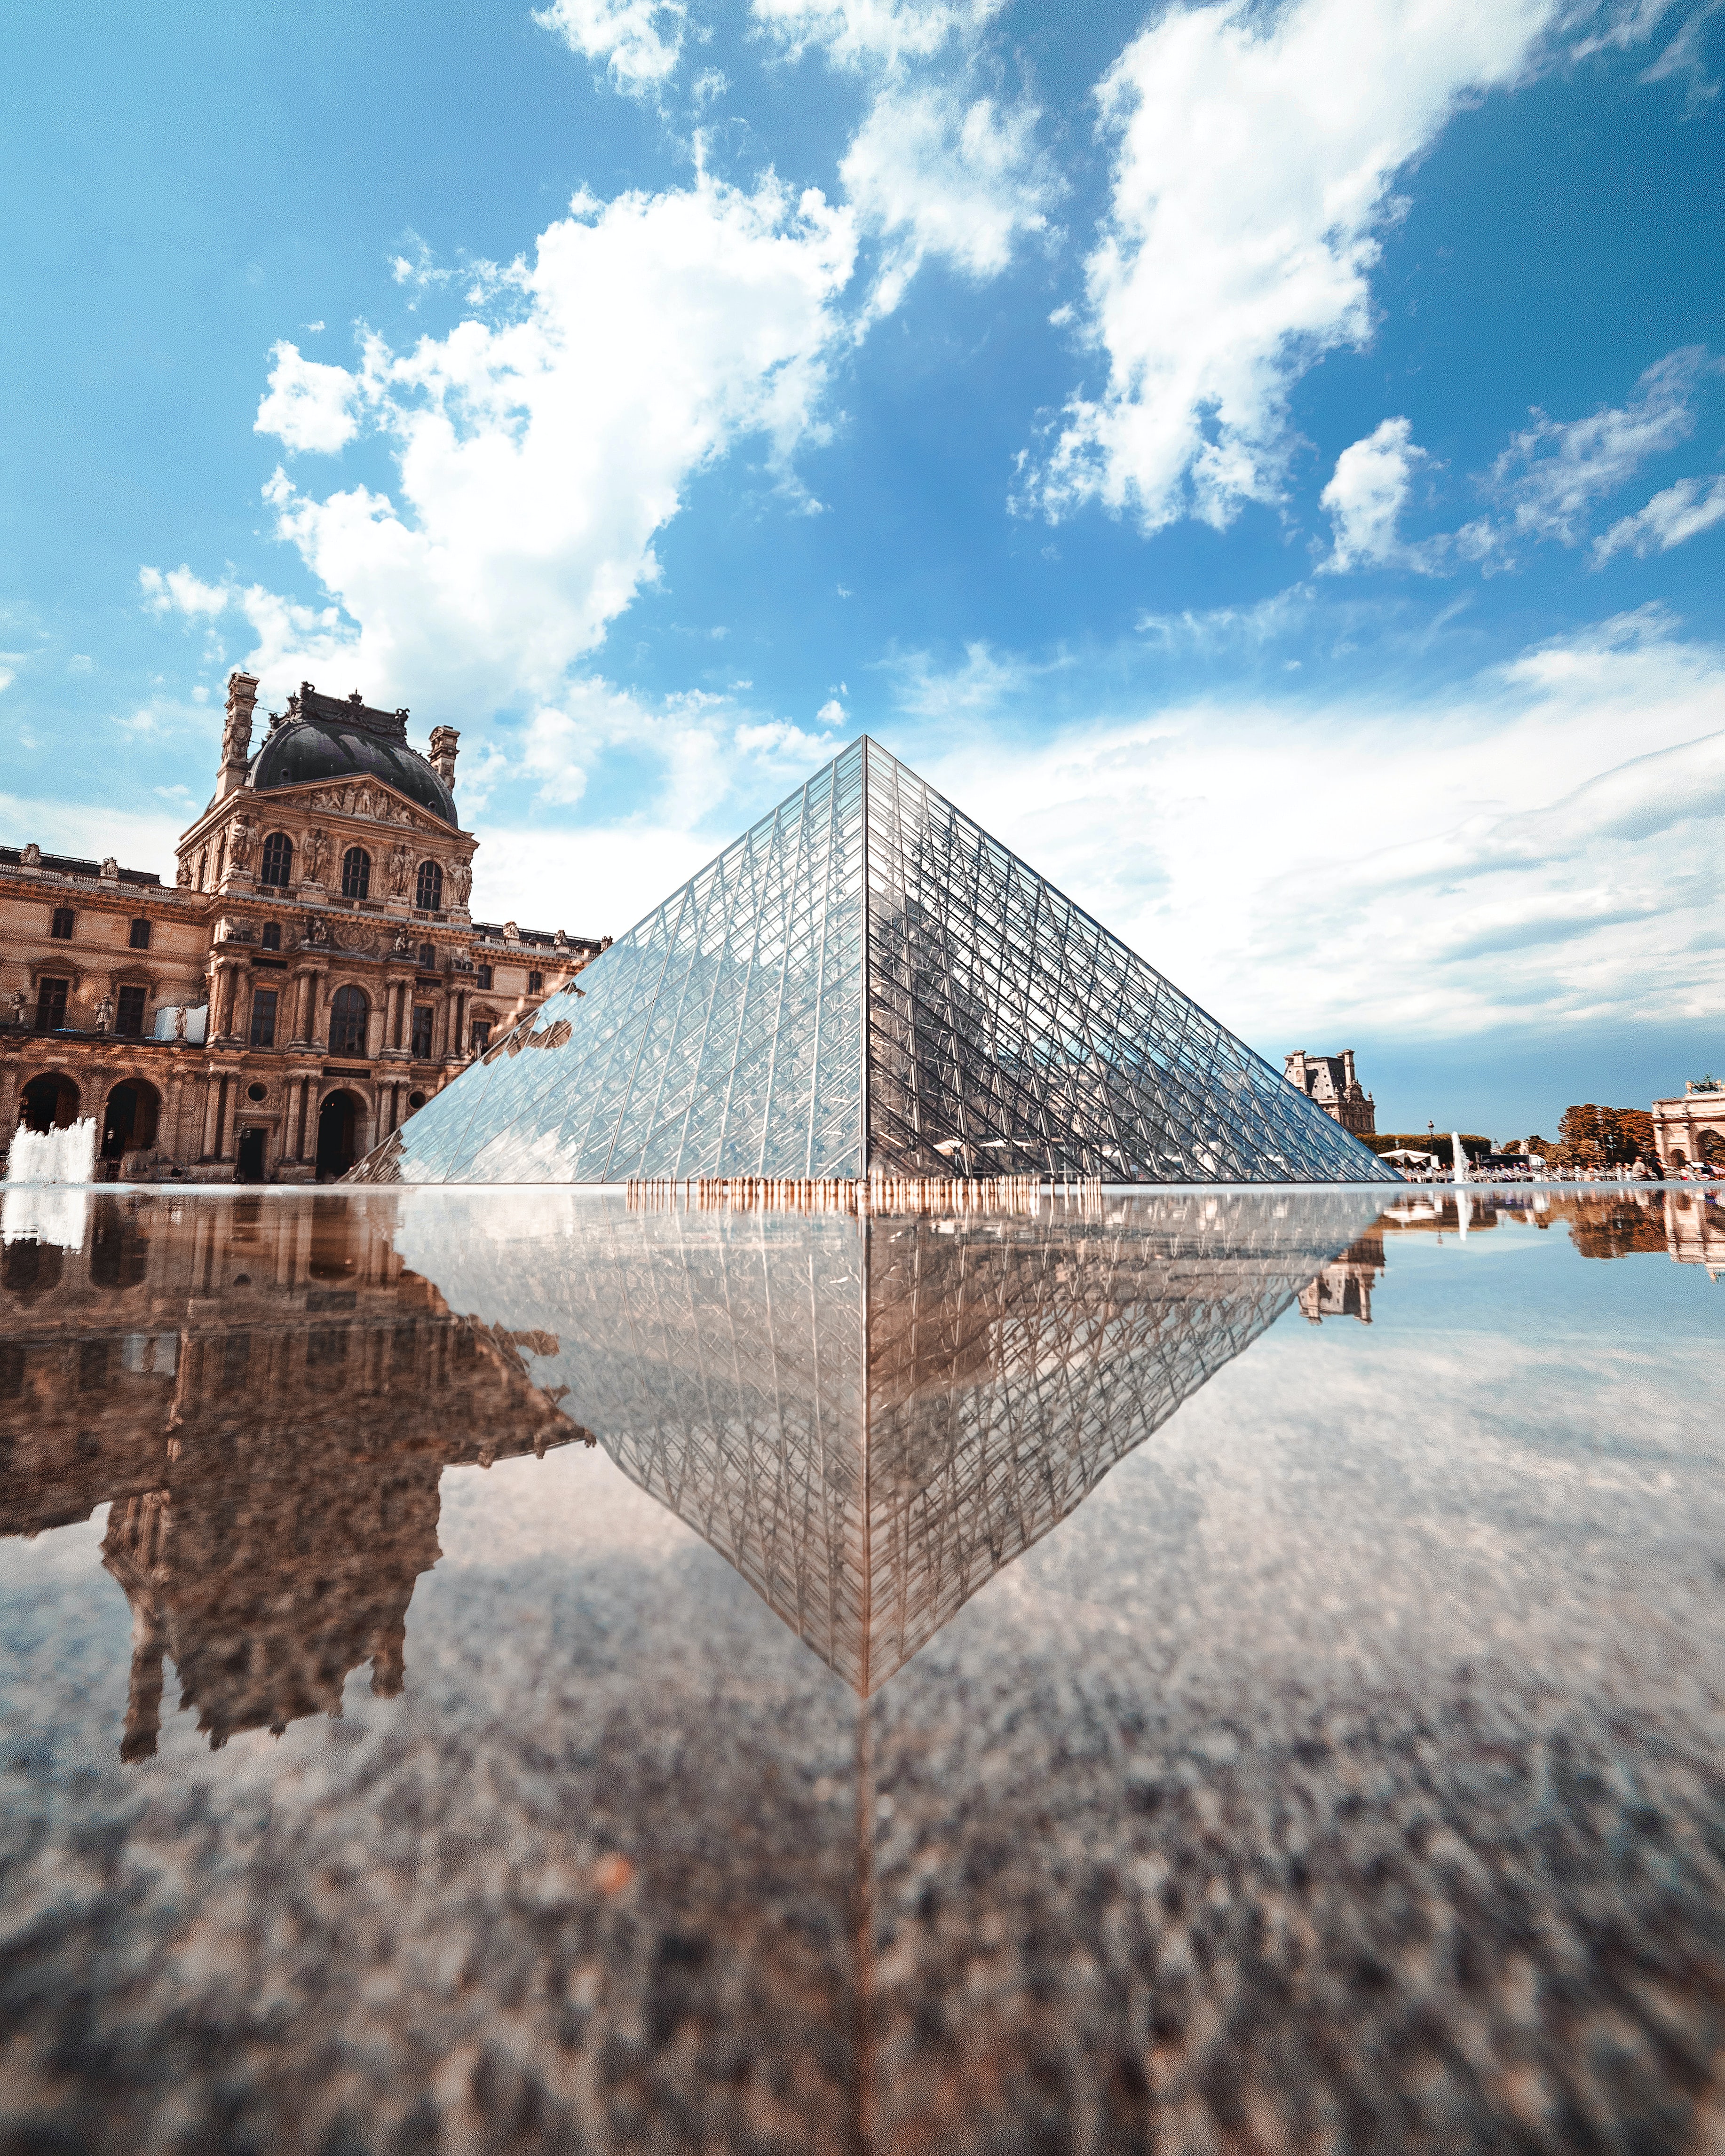 프랑스 파리 루브르 박물관의 피라미드를 찍은 모습